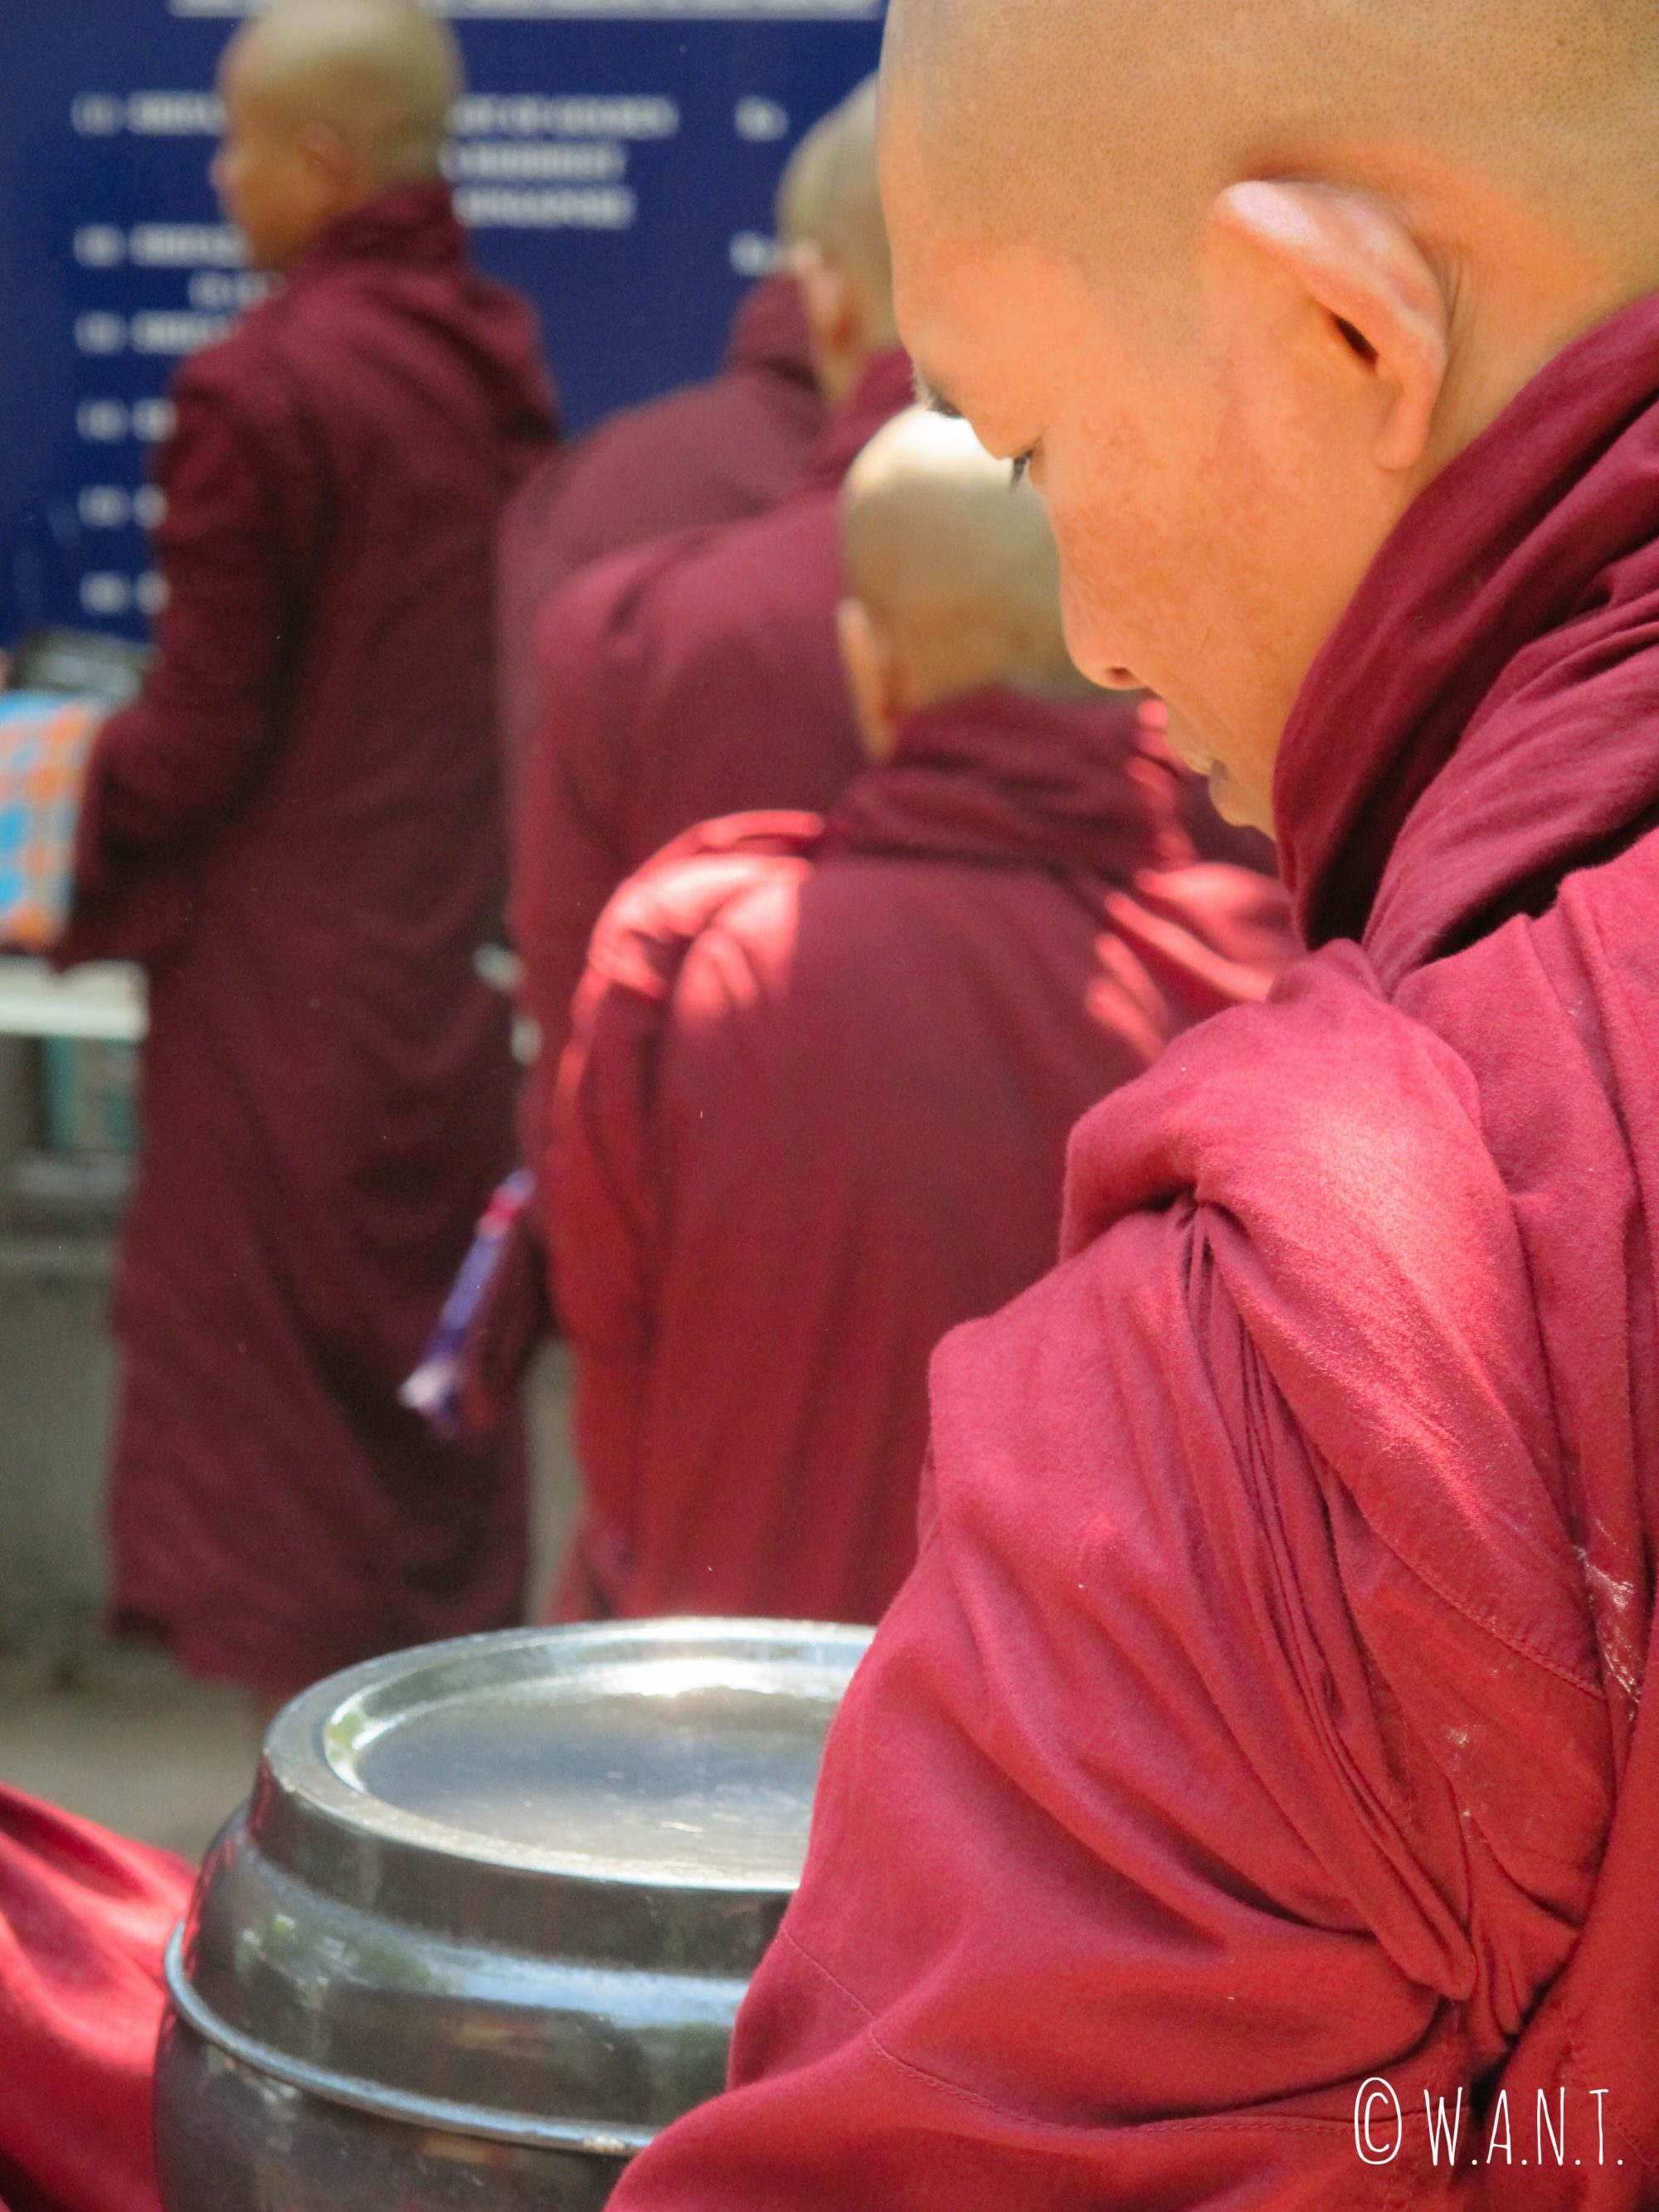 Les moines du monastère Maha Ganayon Kyaung font la queue en attendant que le repas leur soit servi